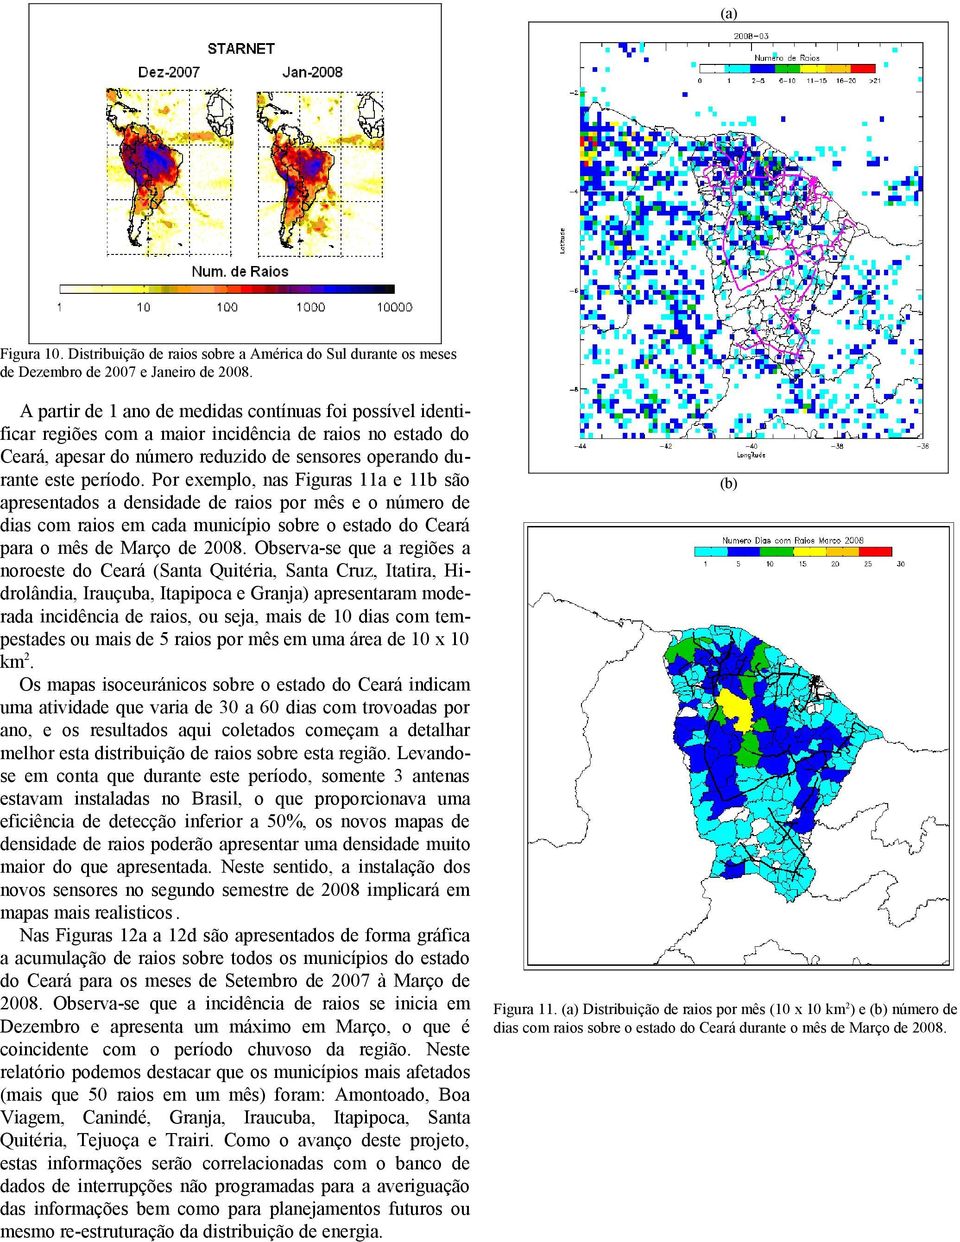 Por exemplo, nas Figuras 11a e 11b são apresentados a densidade de raios por mês e o número de dias com raios em cada município sobre o estado do Ceará para o mês de Março de 2008.